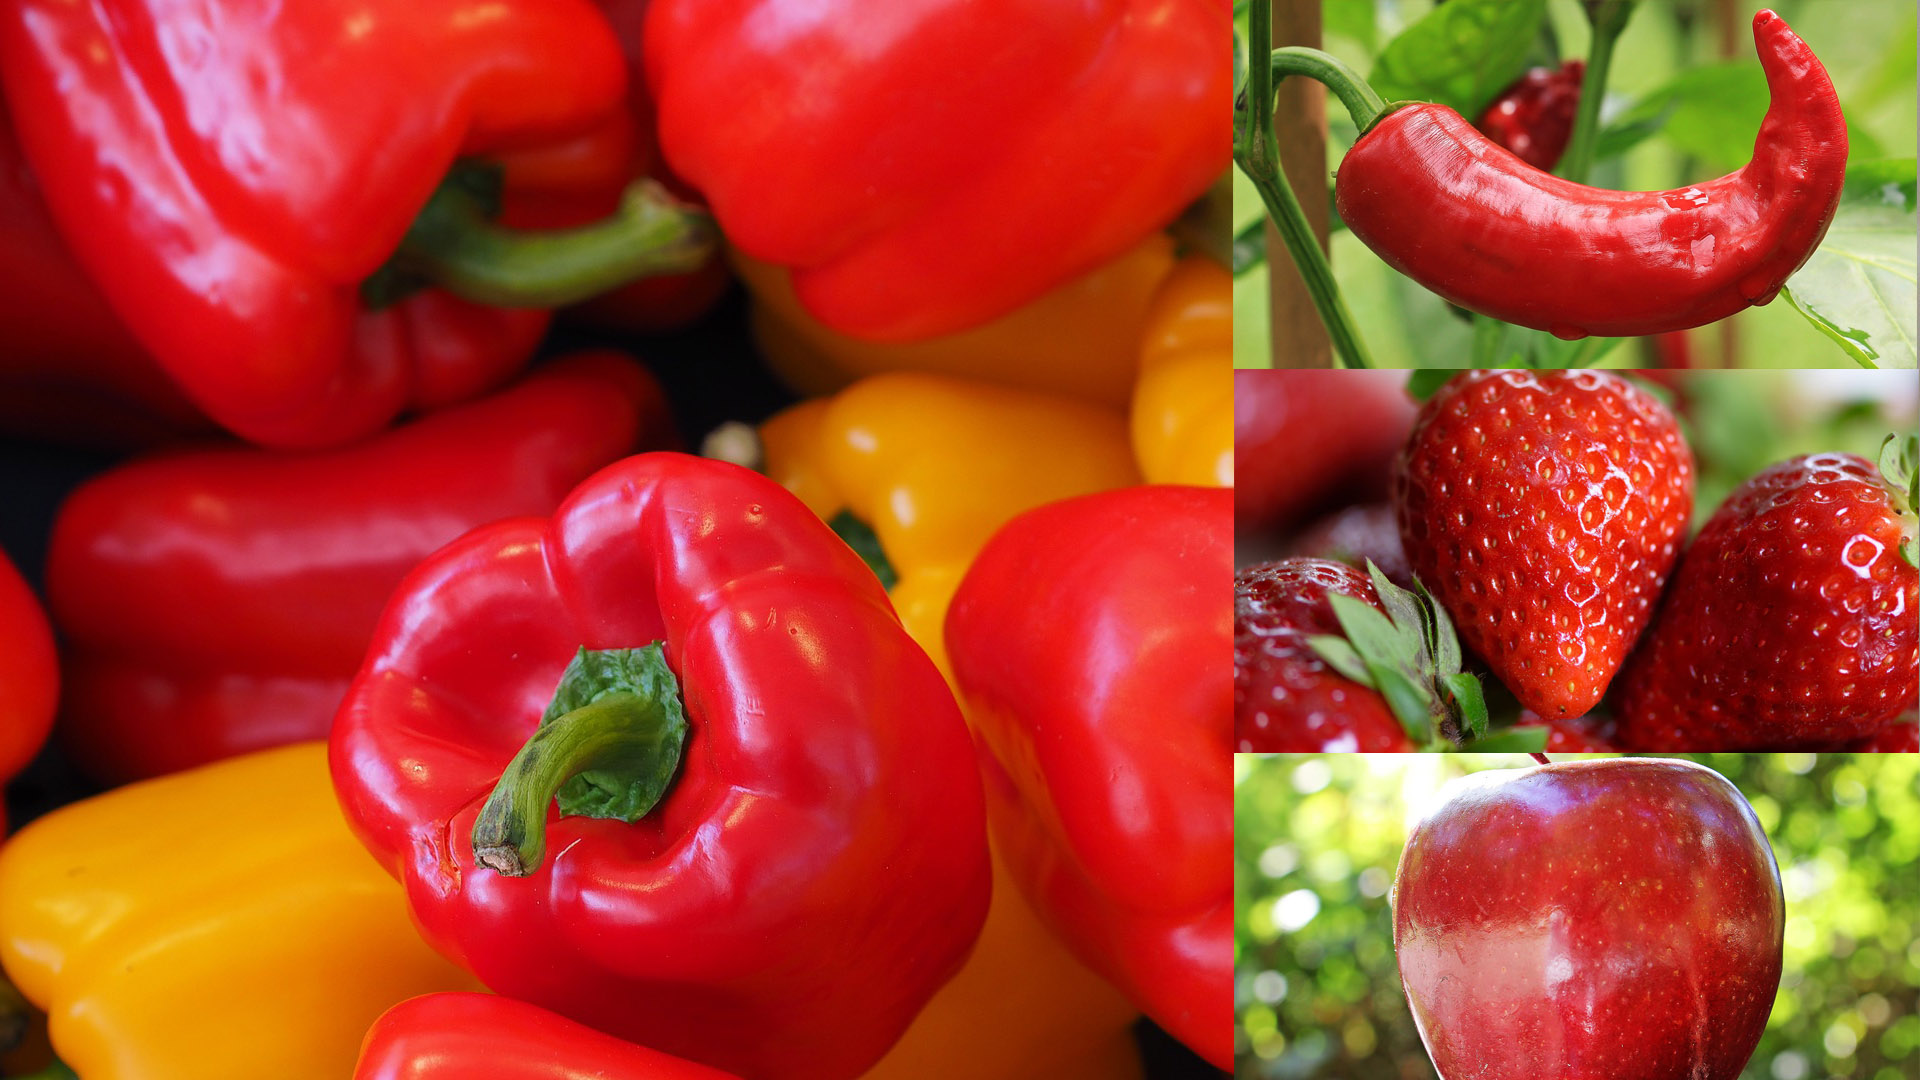 피망&#44; 고추&#44; 딸기&#44; 사과등 빨간색 과일과 채소 이미지